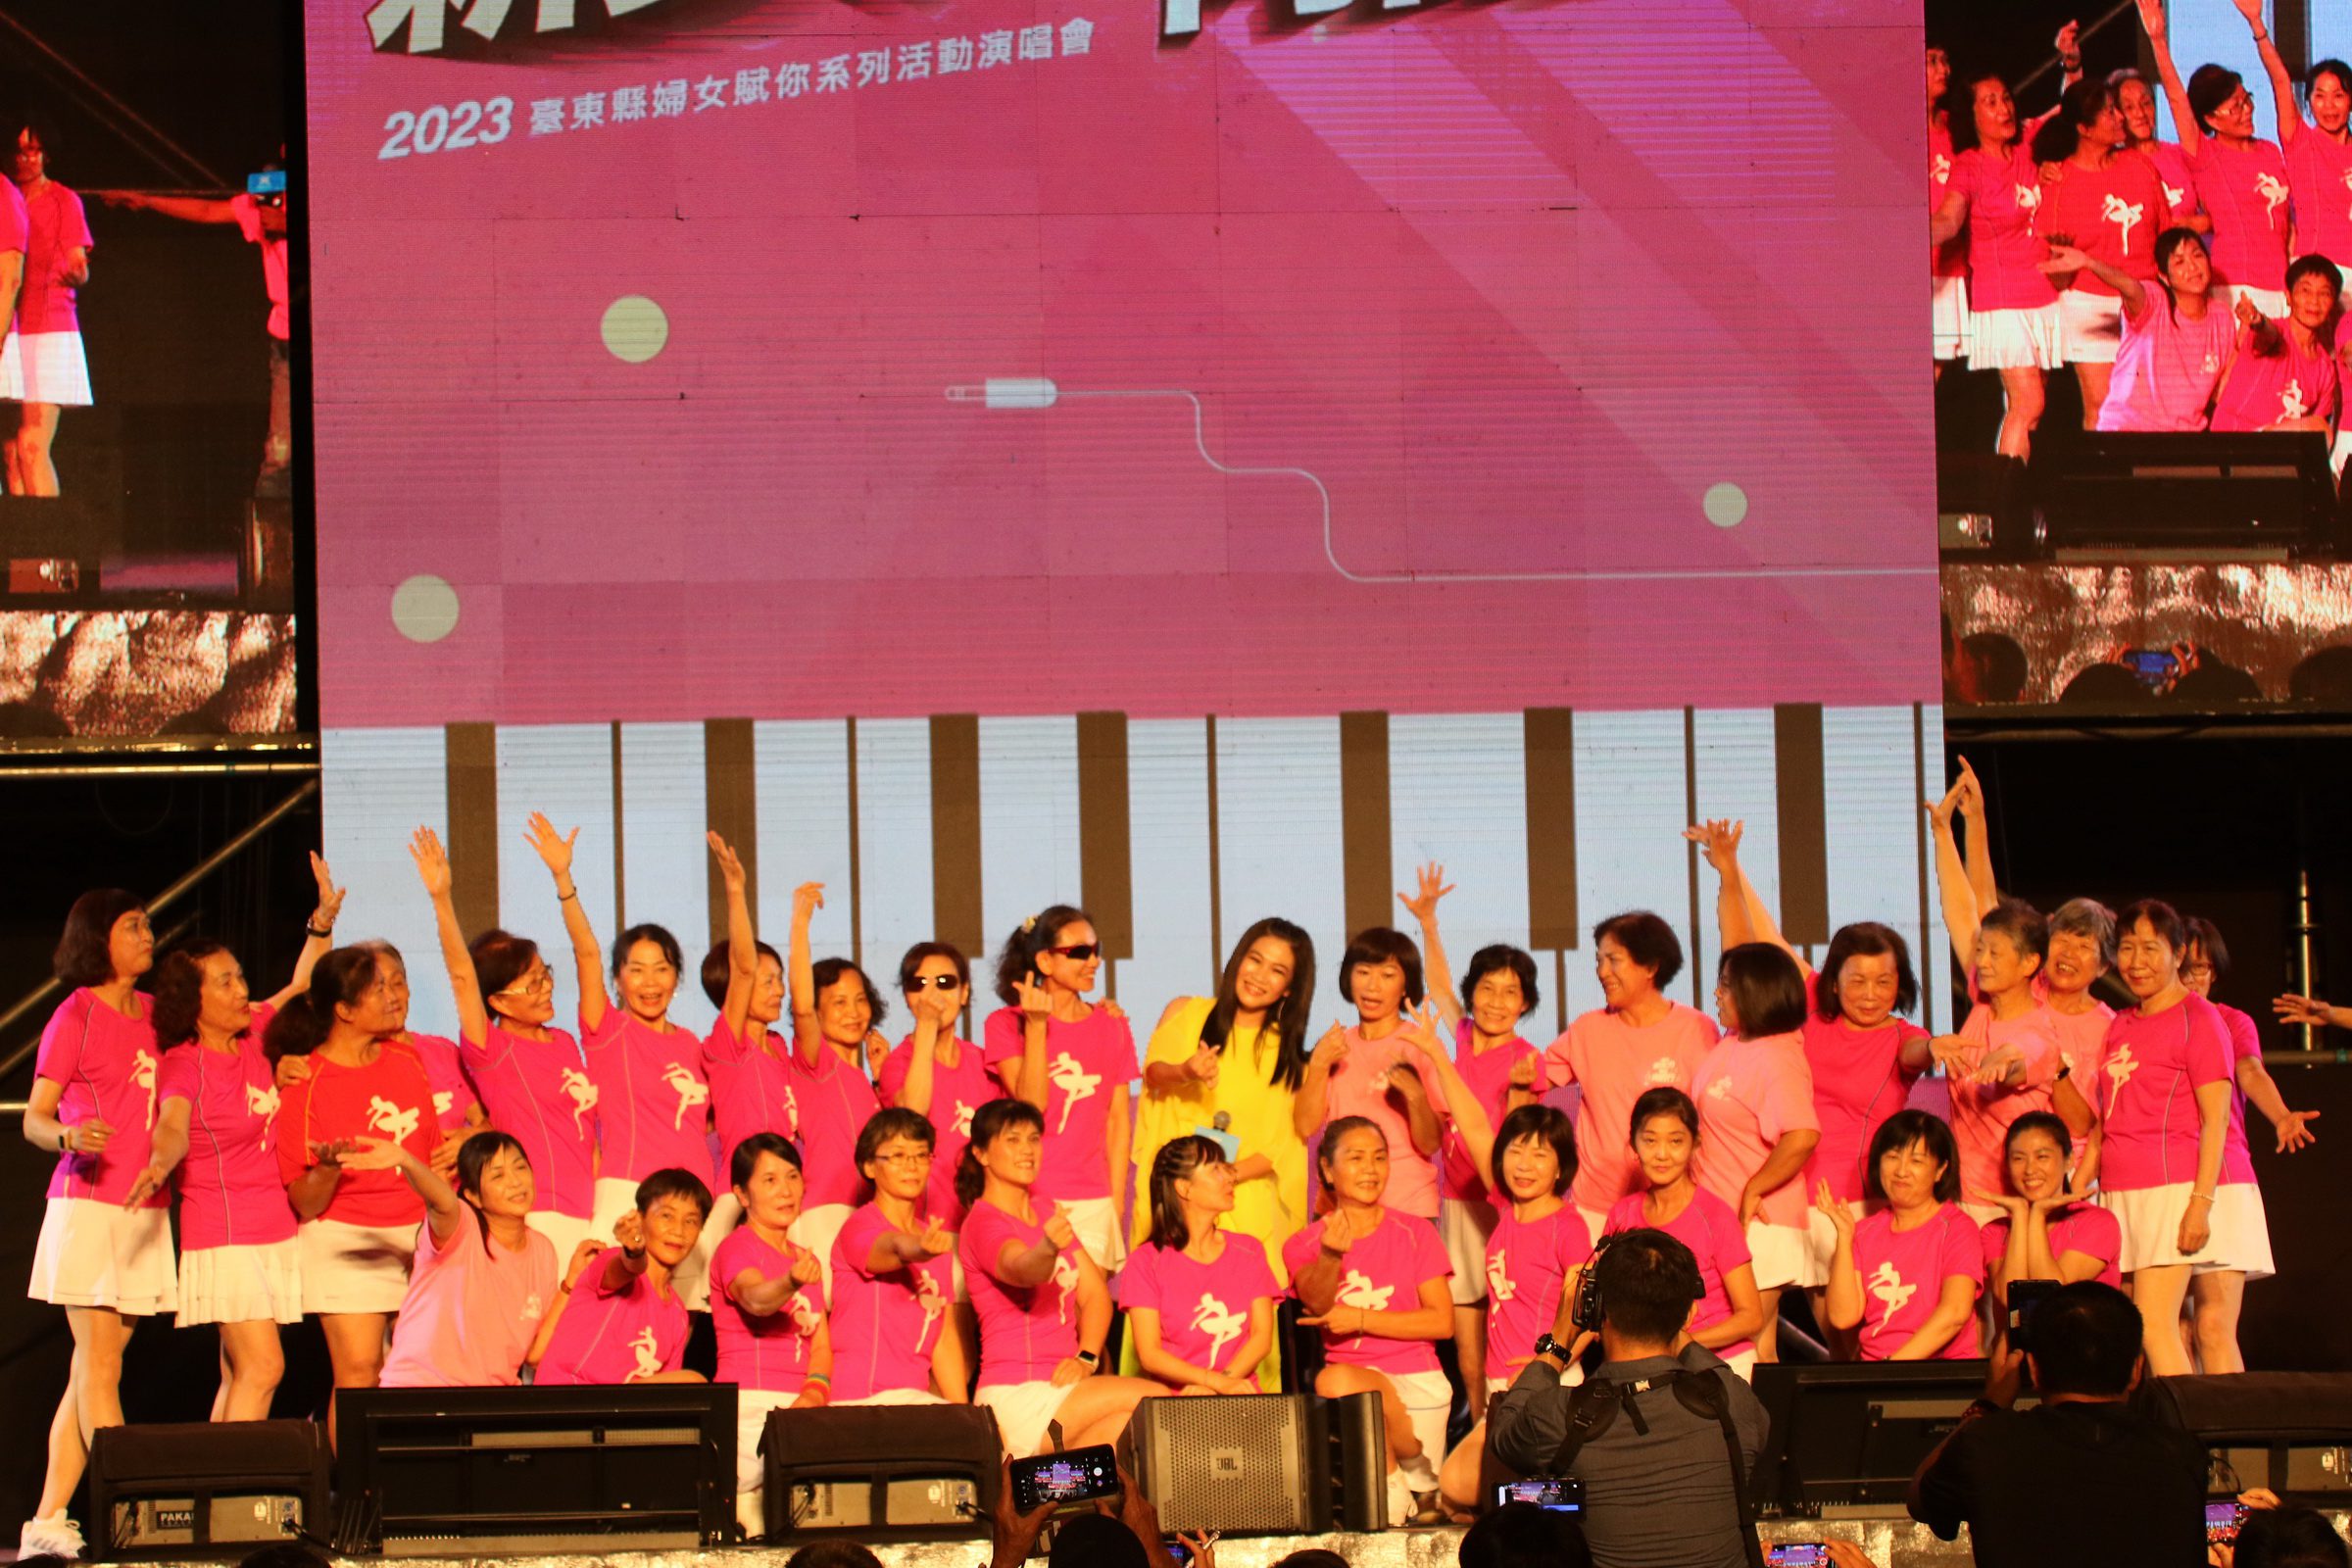 江美琪、黃妃、曾沛慈、郭靜、林曉培組「女力美聲團」 齊聚台東為關懷婦女福利而唱